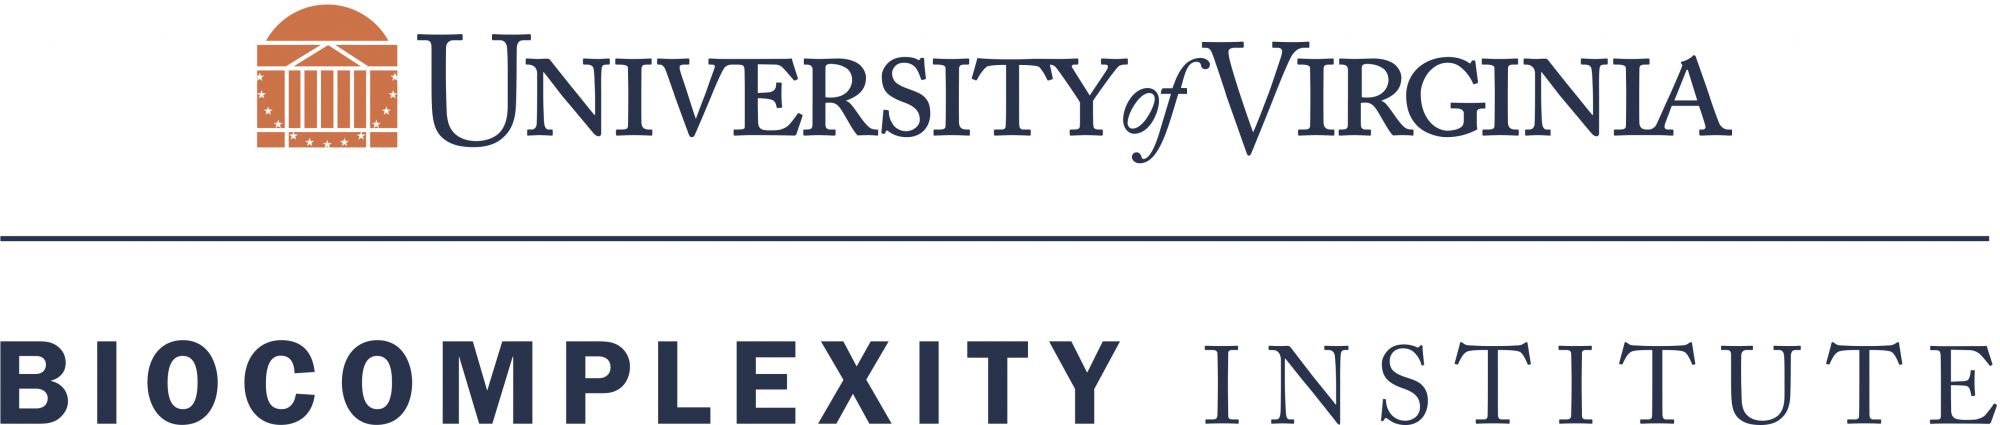 University of Virginia Biocomplexity Institute